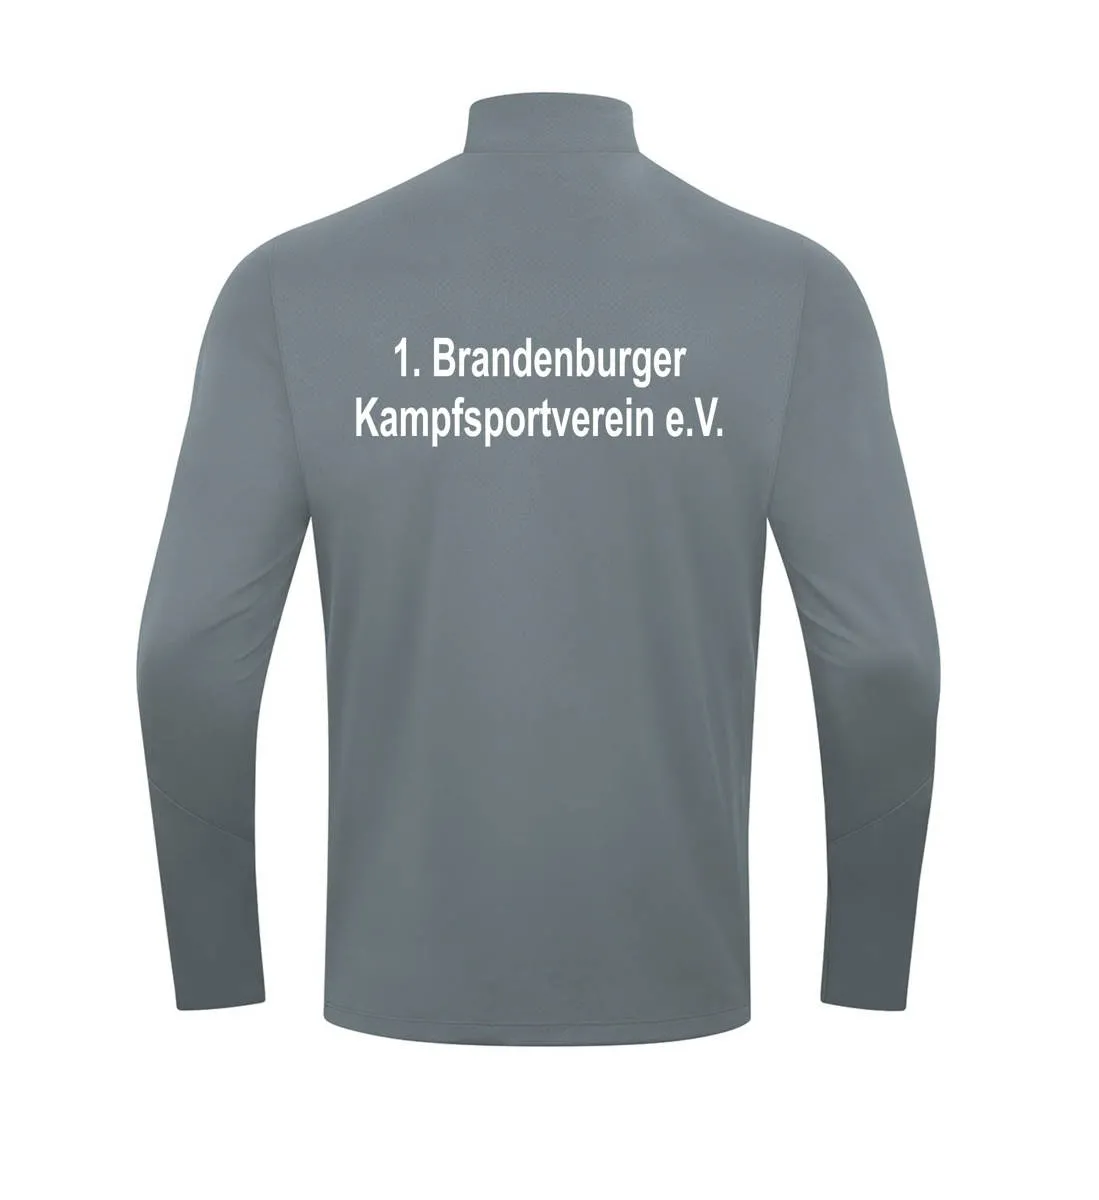 JAKO long sleeve shirt Brandenburger Kampfsportverein